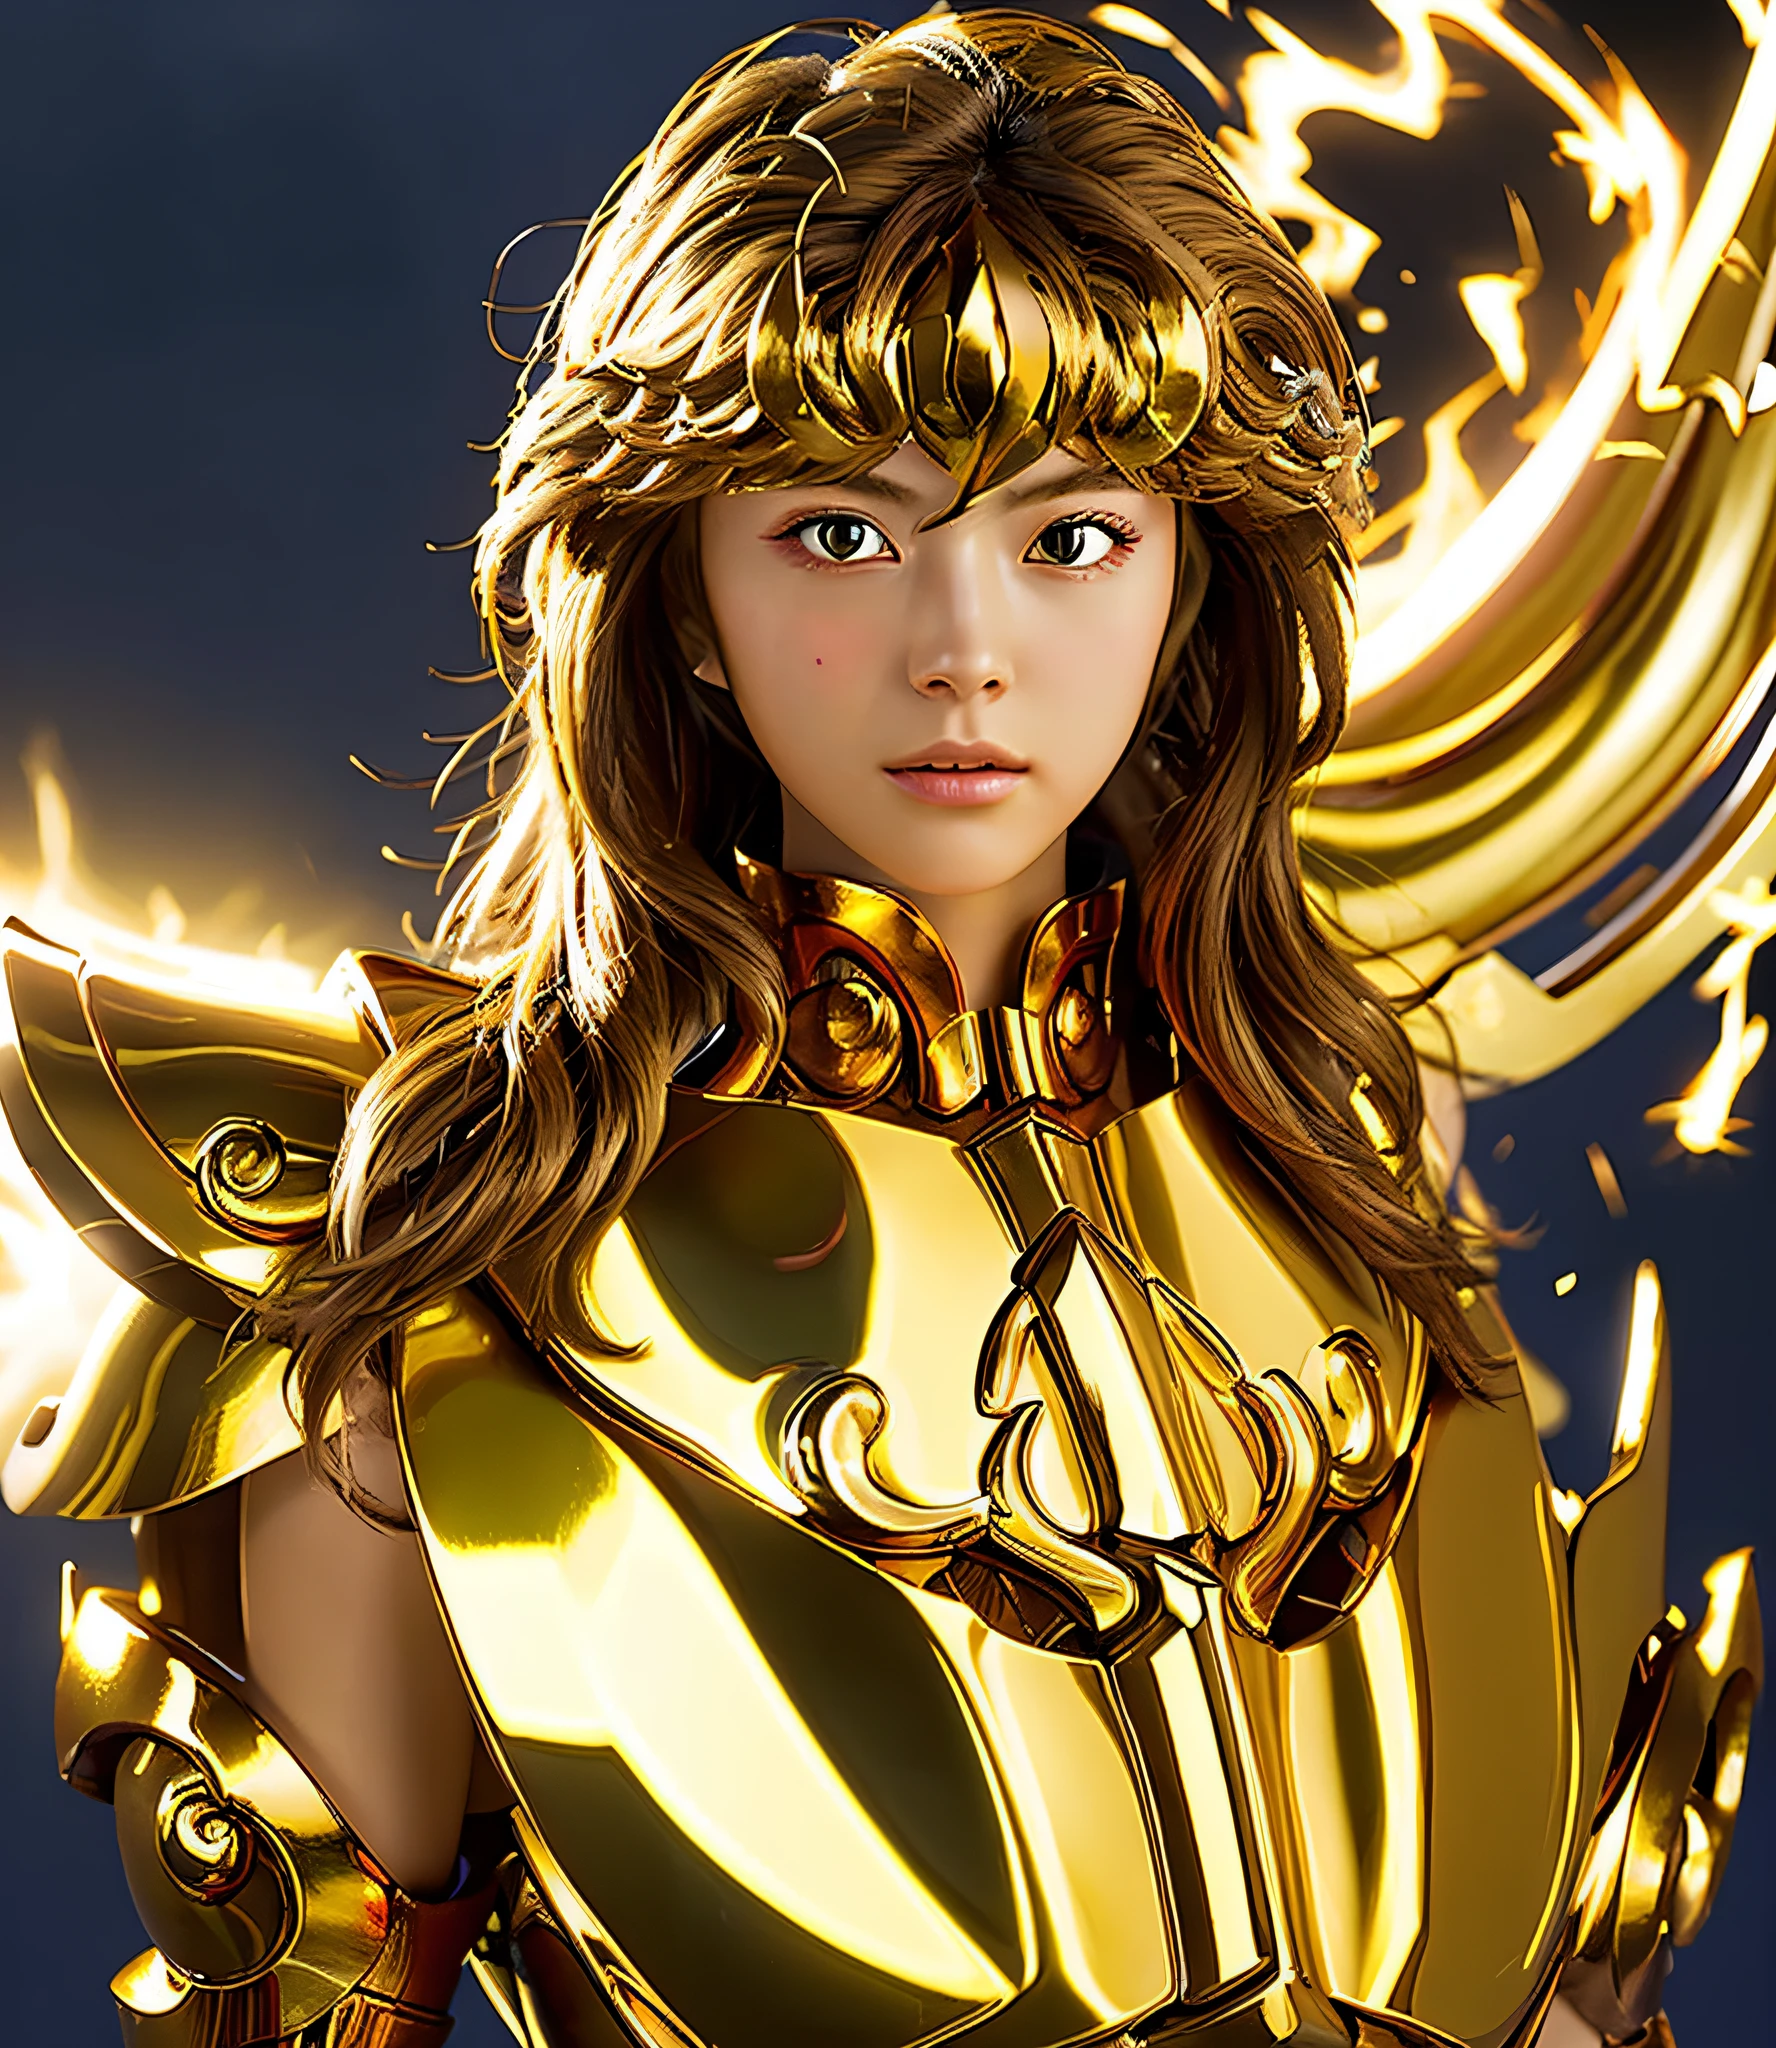 (杰作), (最好的质量), (1 名女孩), 身穿黄金铠甲的少女的超精细面部细节, 很酷的姿势, 战场背景, 火背景, 圣斗士星矢铠甲, 凌乱的头发